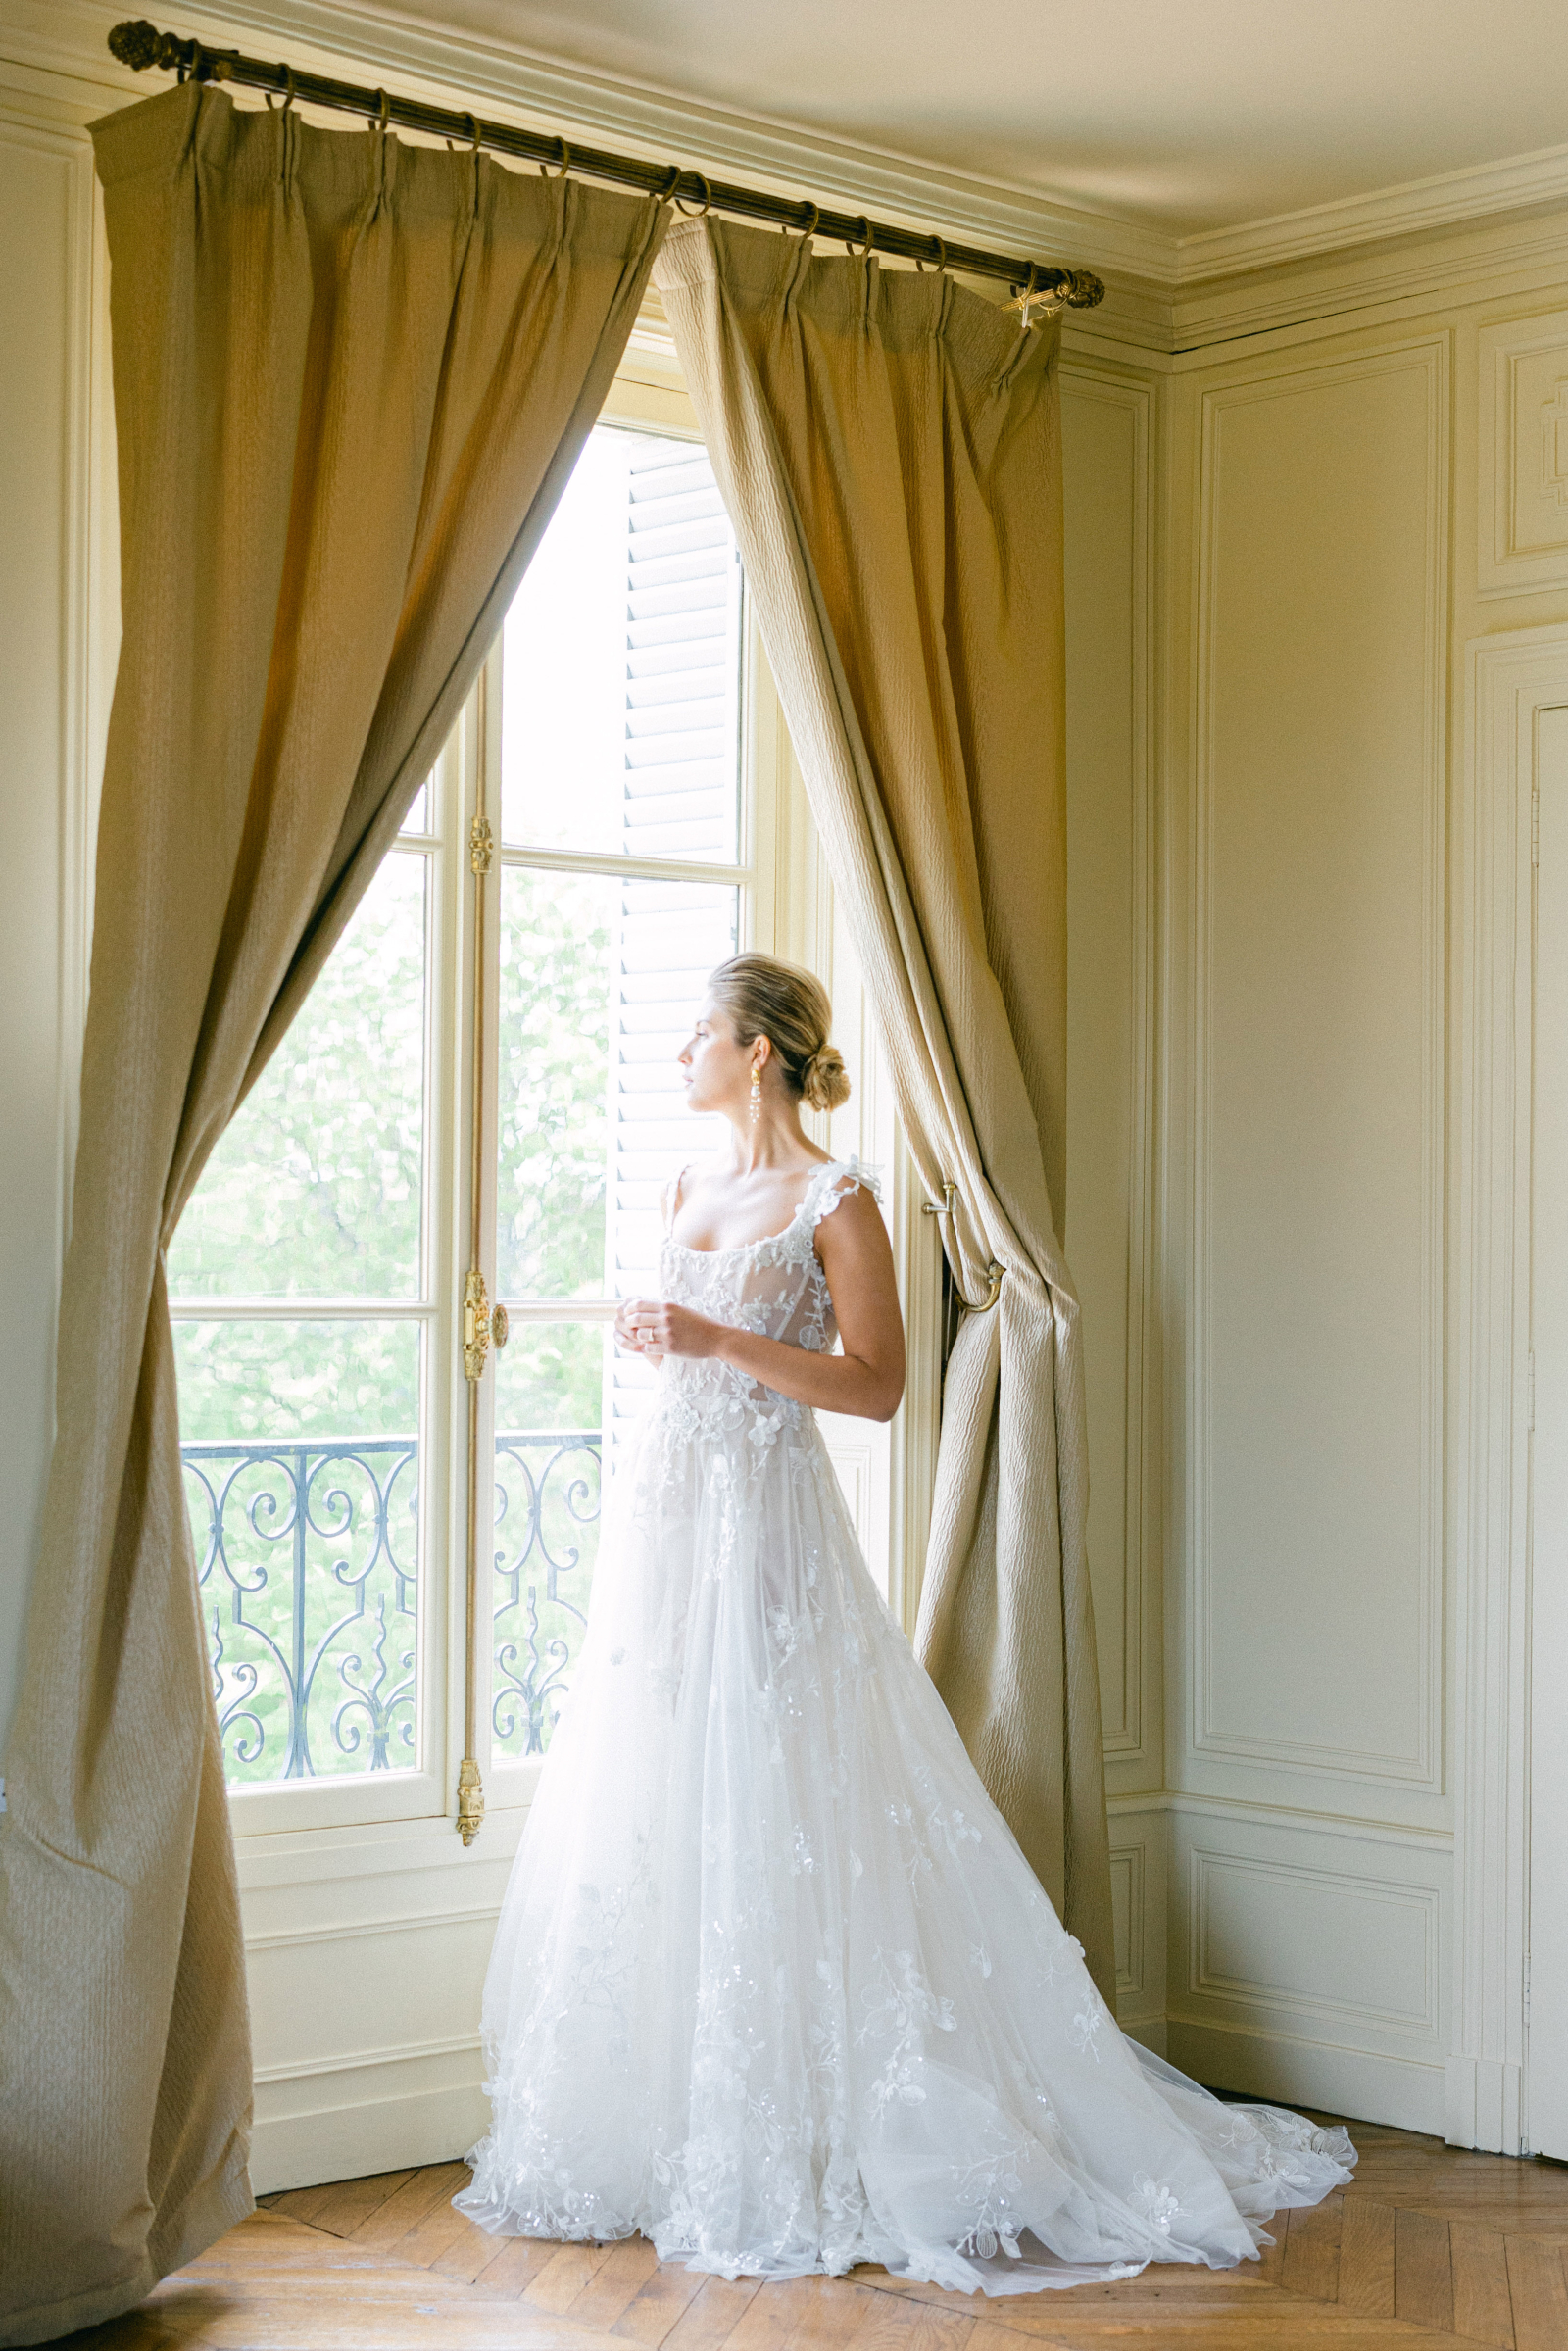 Fairytale wedding at Château de Tourreau – Thomas Audiffren Photography